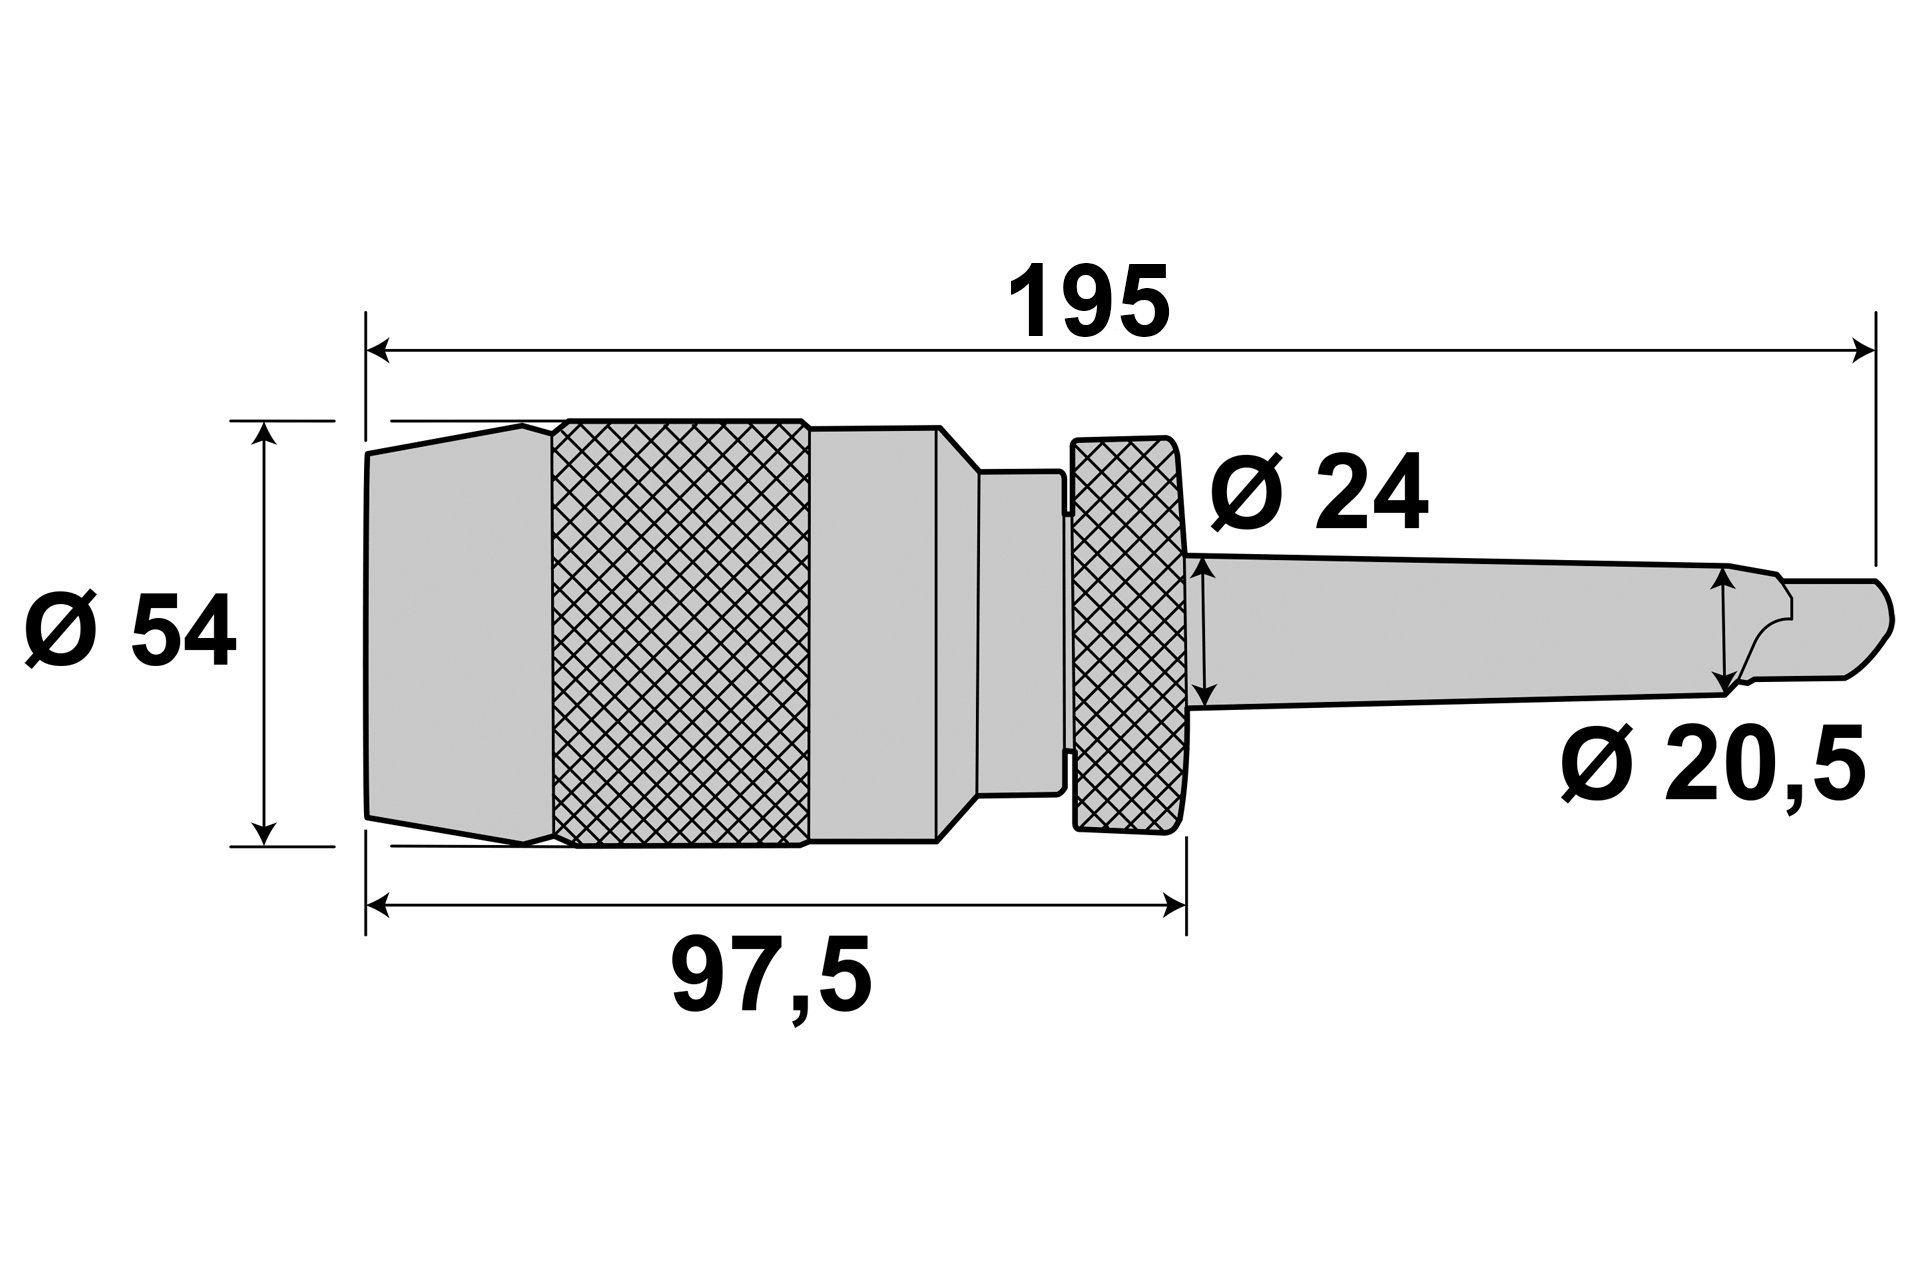 16 mm Schnellspann Bohrfutter MK3 Kegeldorn für Drehmaschine Bohrmaschine GOOD # 